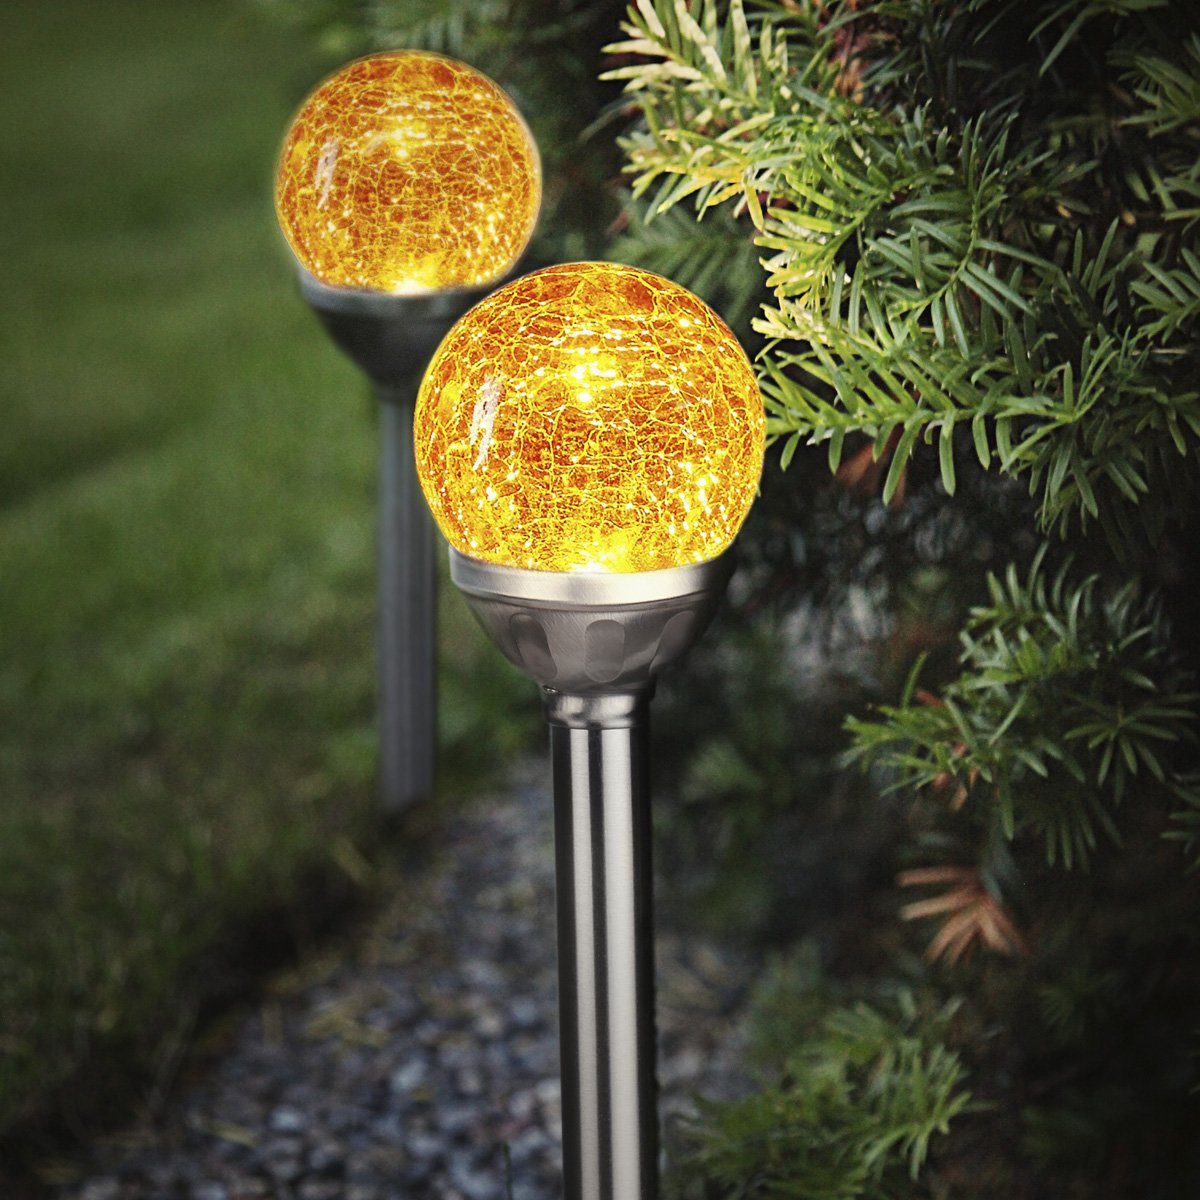 Gartenspieß Set, 26,5cm Classic, - Gartenstrahler - Solarkugel Lichtsensor LED TRADING LED - 2er gelb - STAR LED amber